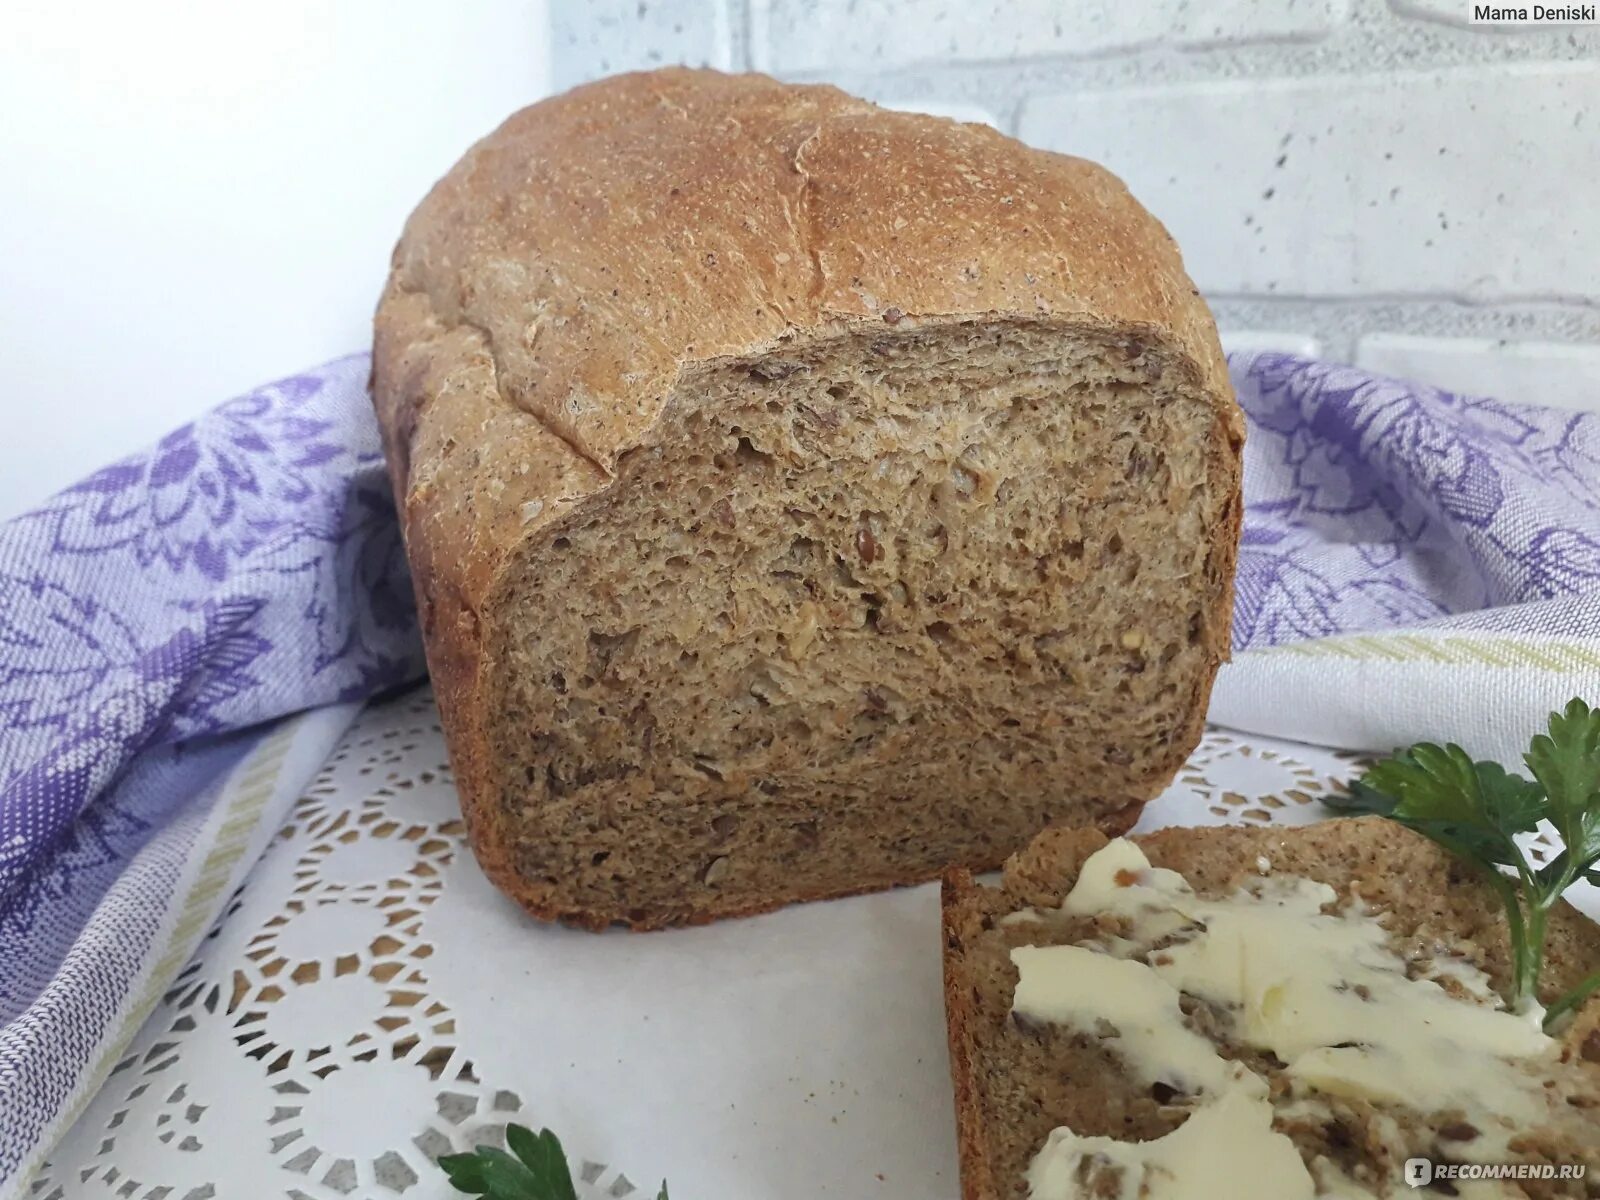 Вкусный хлеб печь. Домашний хлеб. Домашний хлеб Дагестанский. Печем хлеб дома. Печем хлеб каждый день.